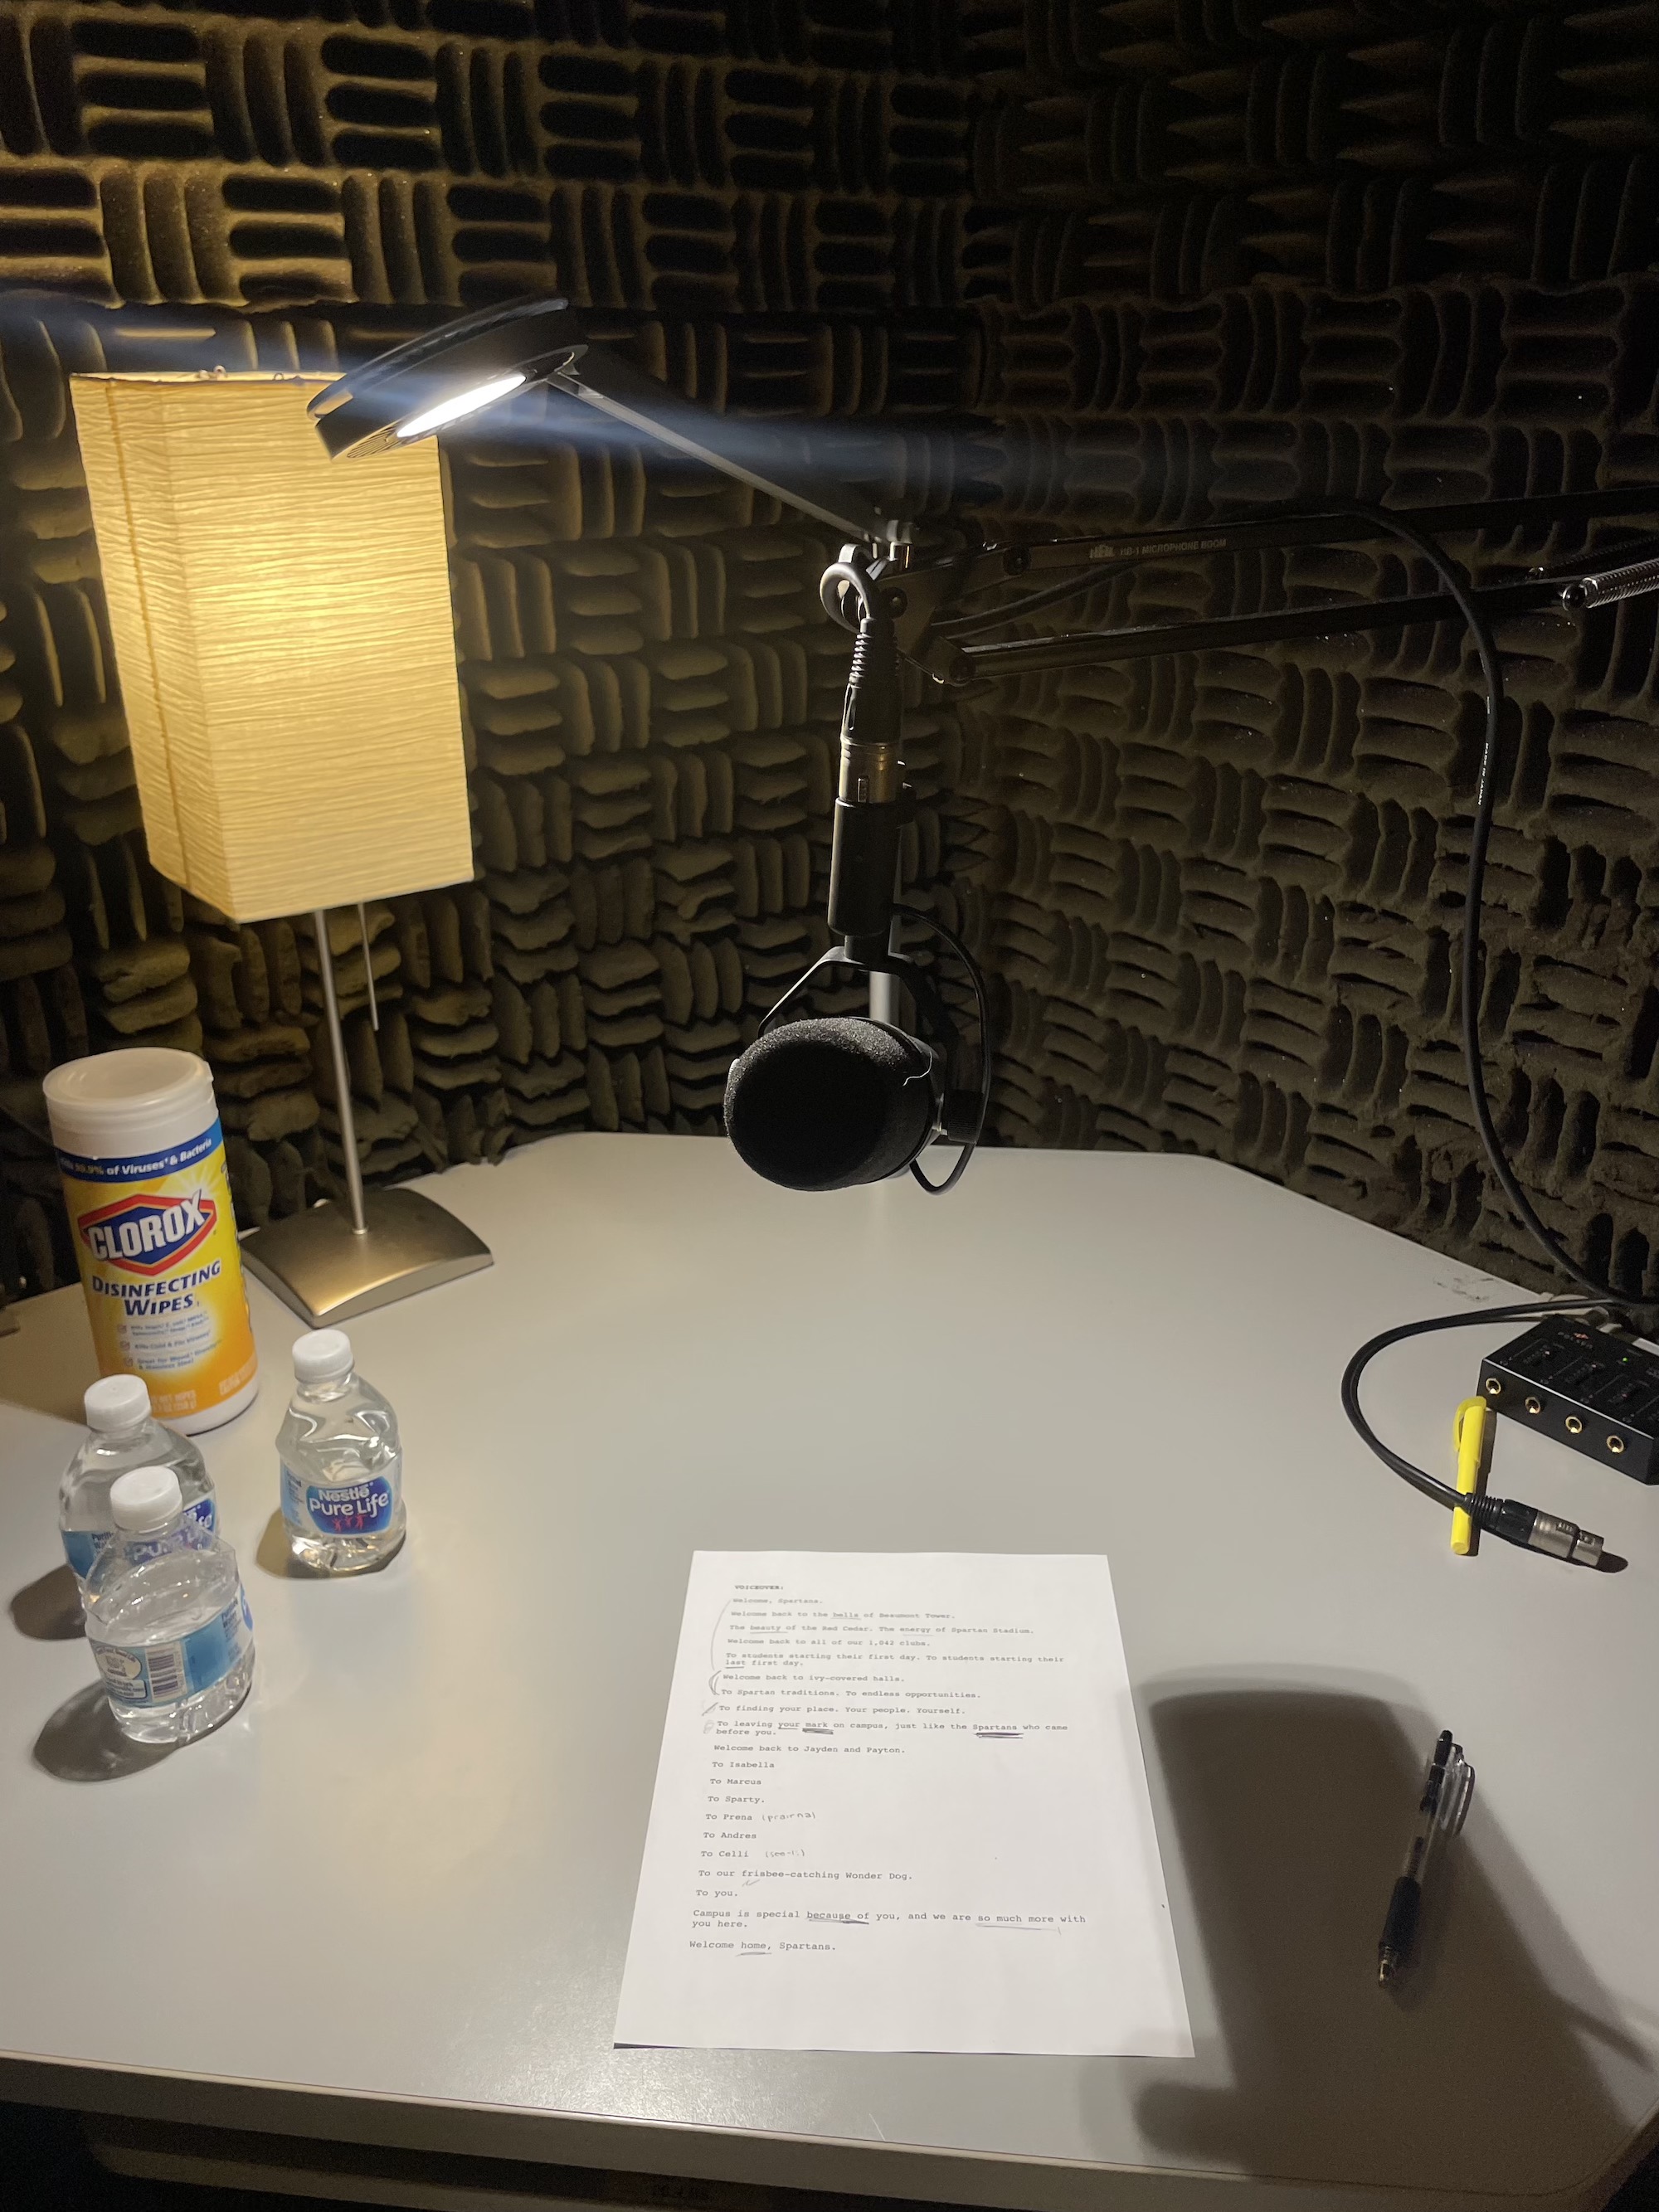 Microphone in recording studio with script below